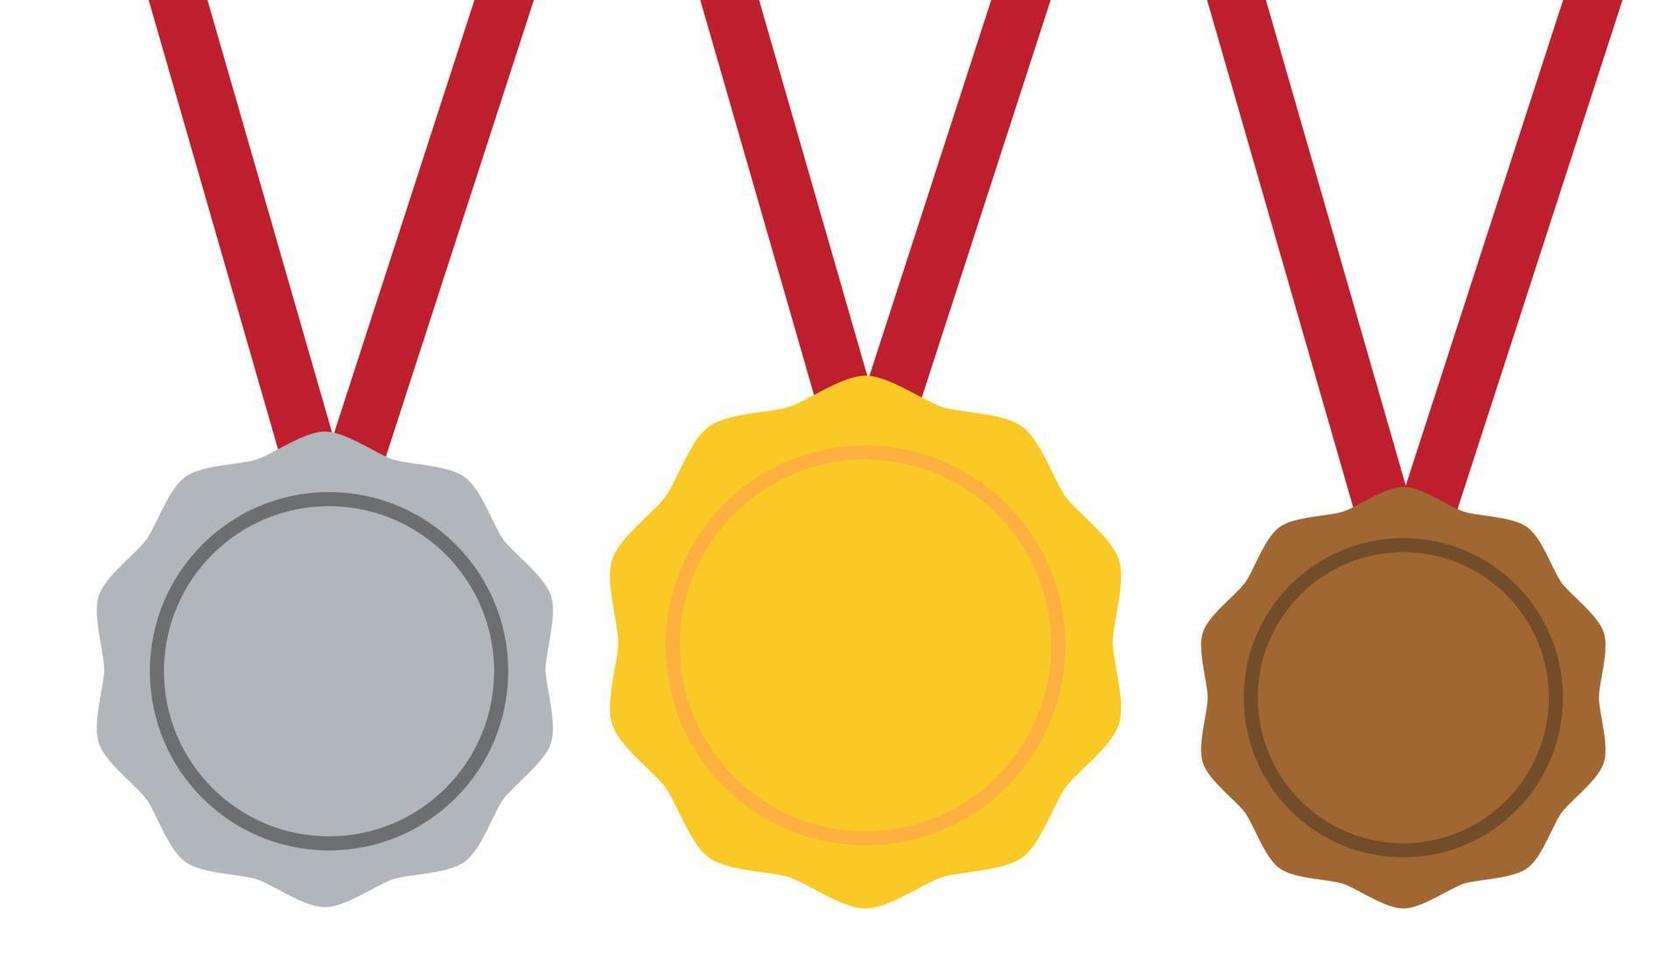 Medaille Gold, Silber, Bronze. 1., 2. und 3. Platz. Trophäe mit rotem Band. flacher Stil, Lagervektor. vektor